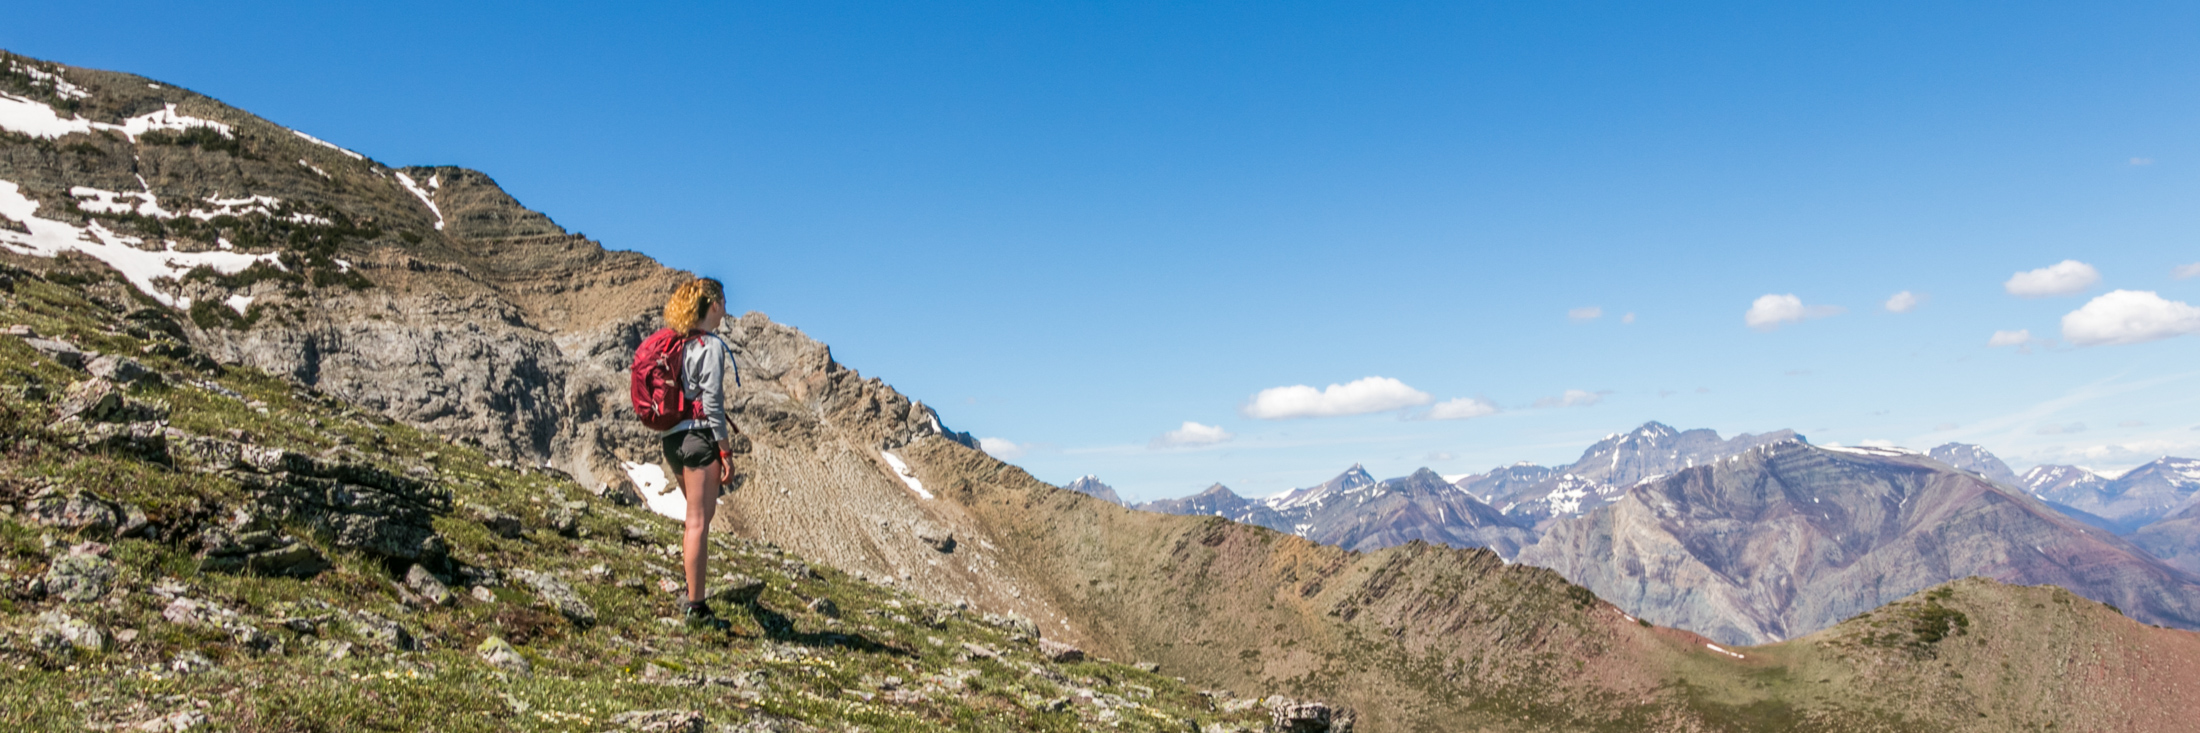 Un randonneur sur une pente de montagne regarde une vallée.